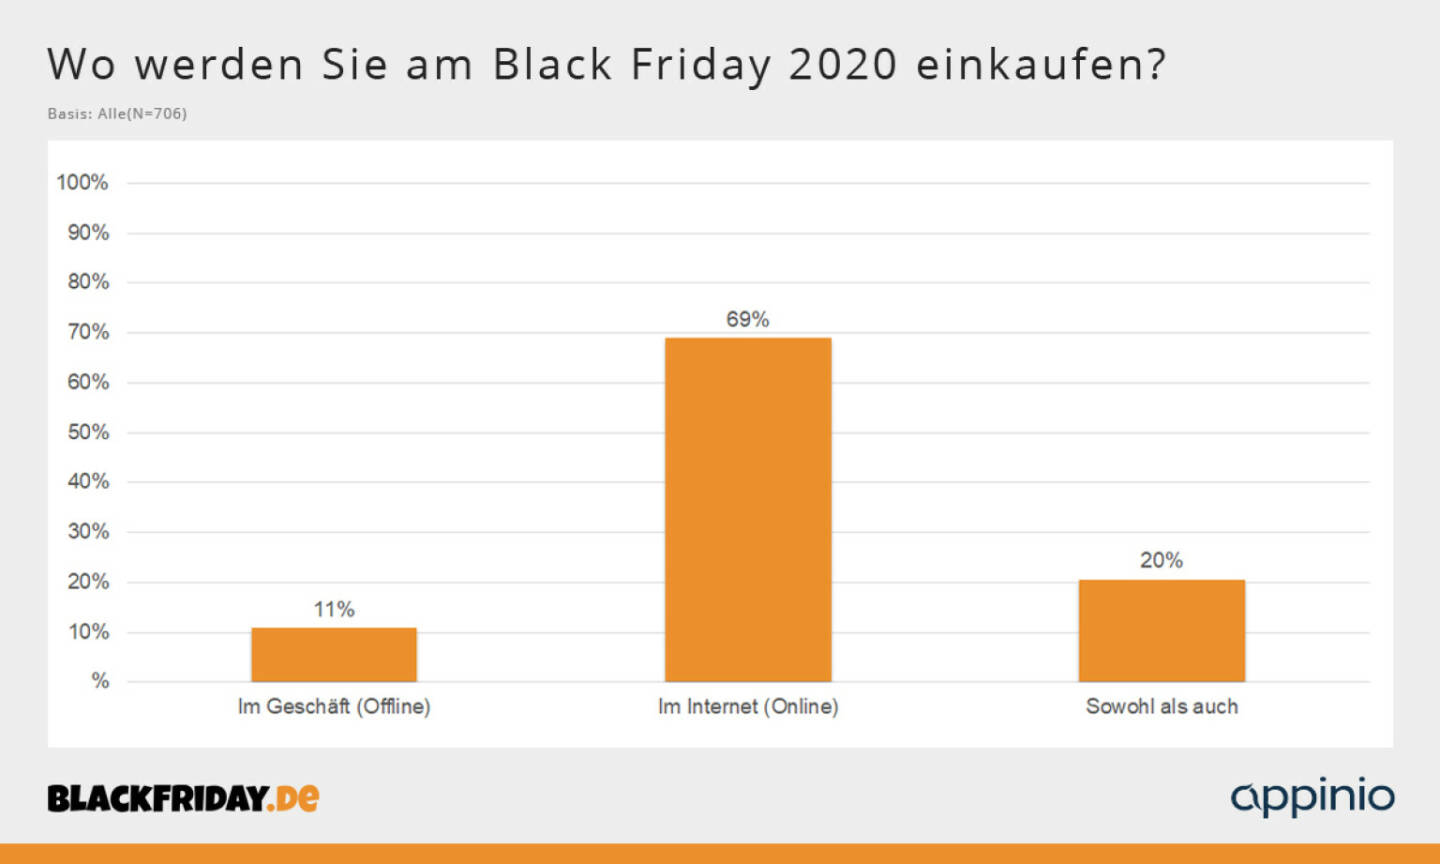 BLACKFRIDAY.DE: Black Friday in der Corona-Pandemie: 69 Prozent der Käufer möchten am Black Friday 2020 ausschließlich online einkaufen; Credit: Fotocredit:BLACKFRIDAY.DE